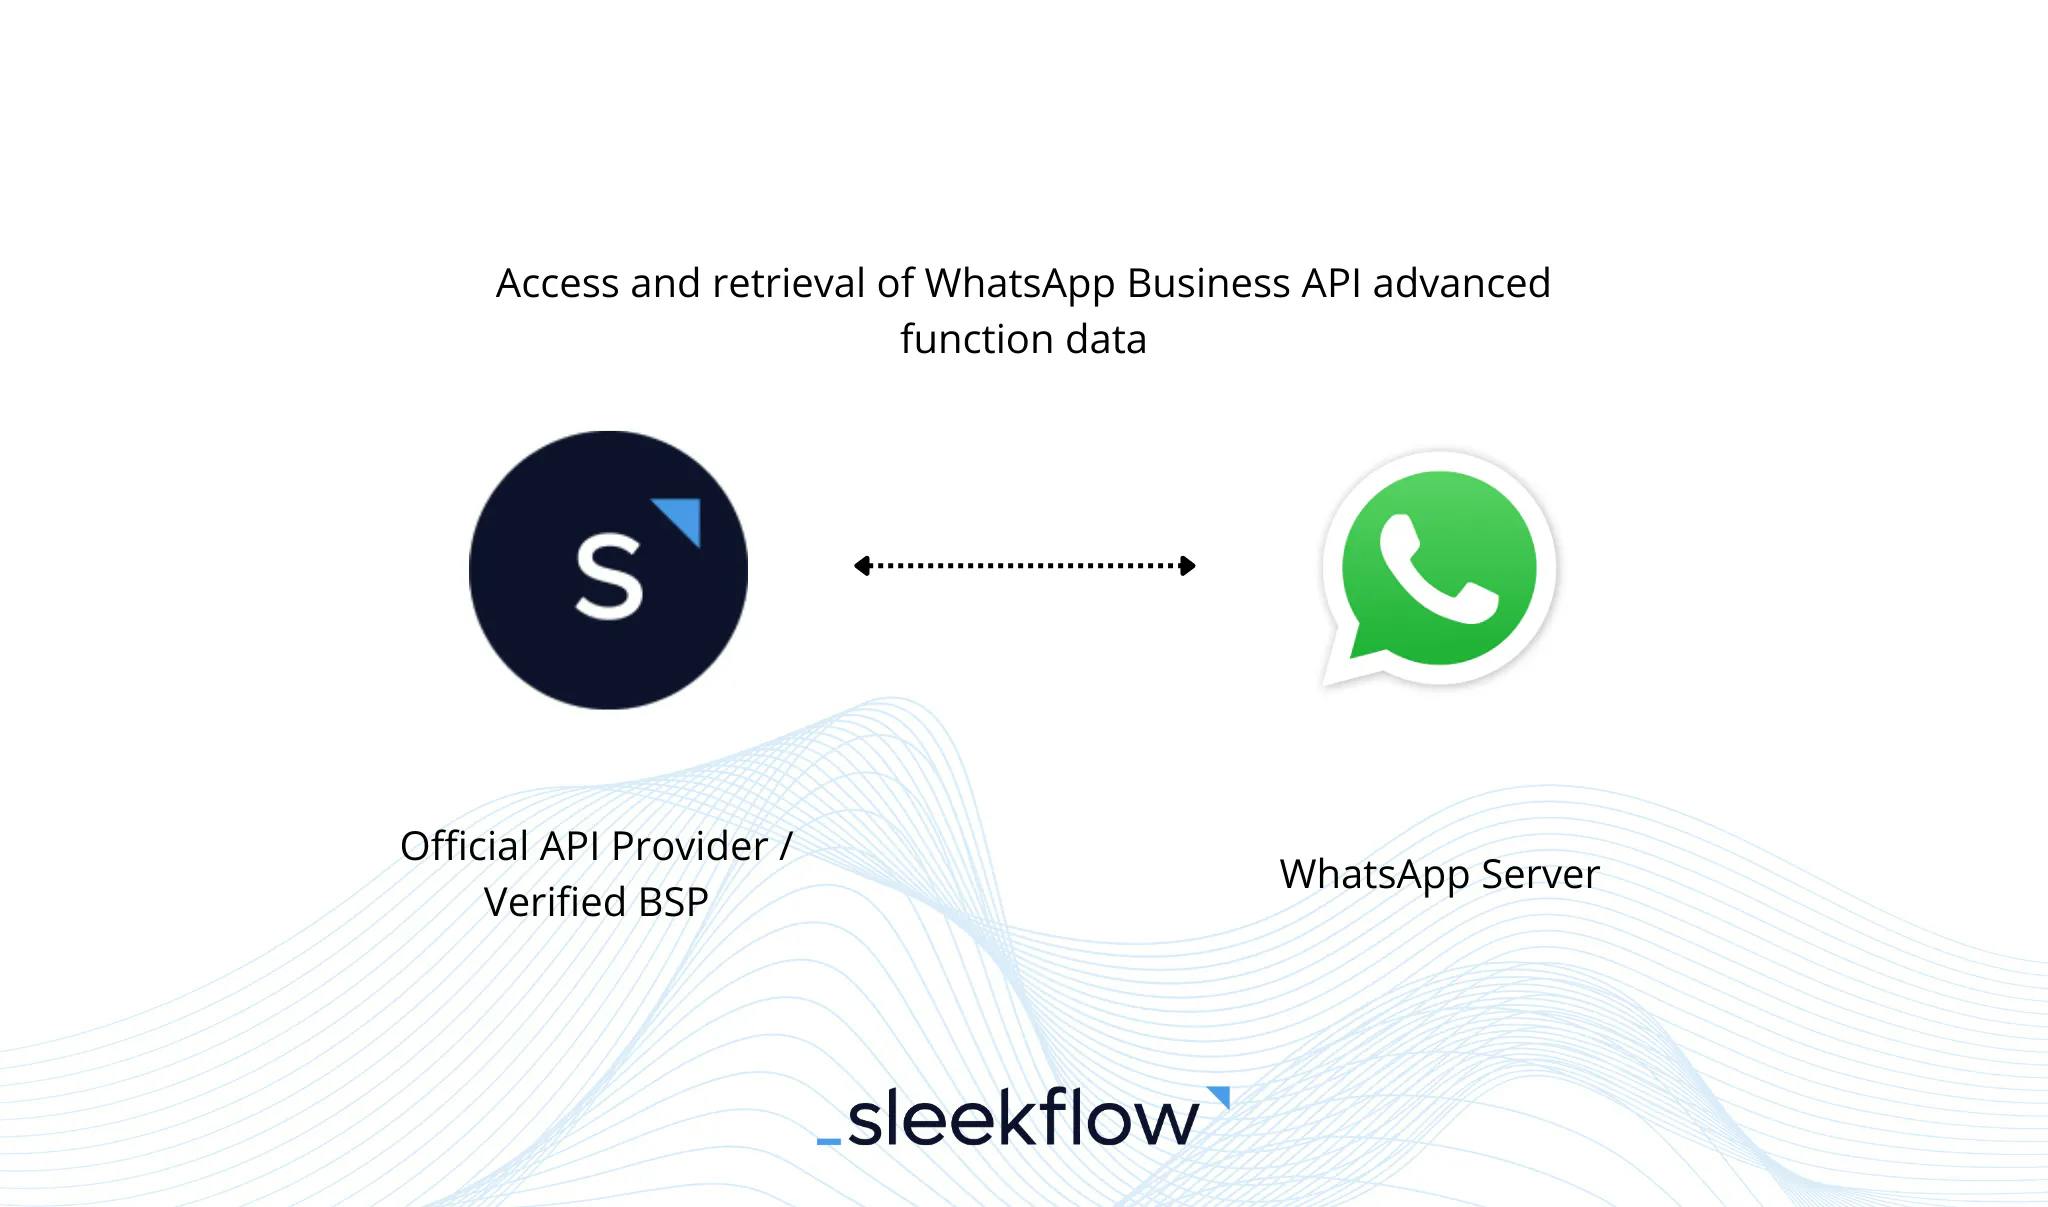 فكرة واجهة برمجة تطبيقات واتساب BSP الرسمية لتطبيق واتساب للأعمال من SleekFlow